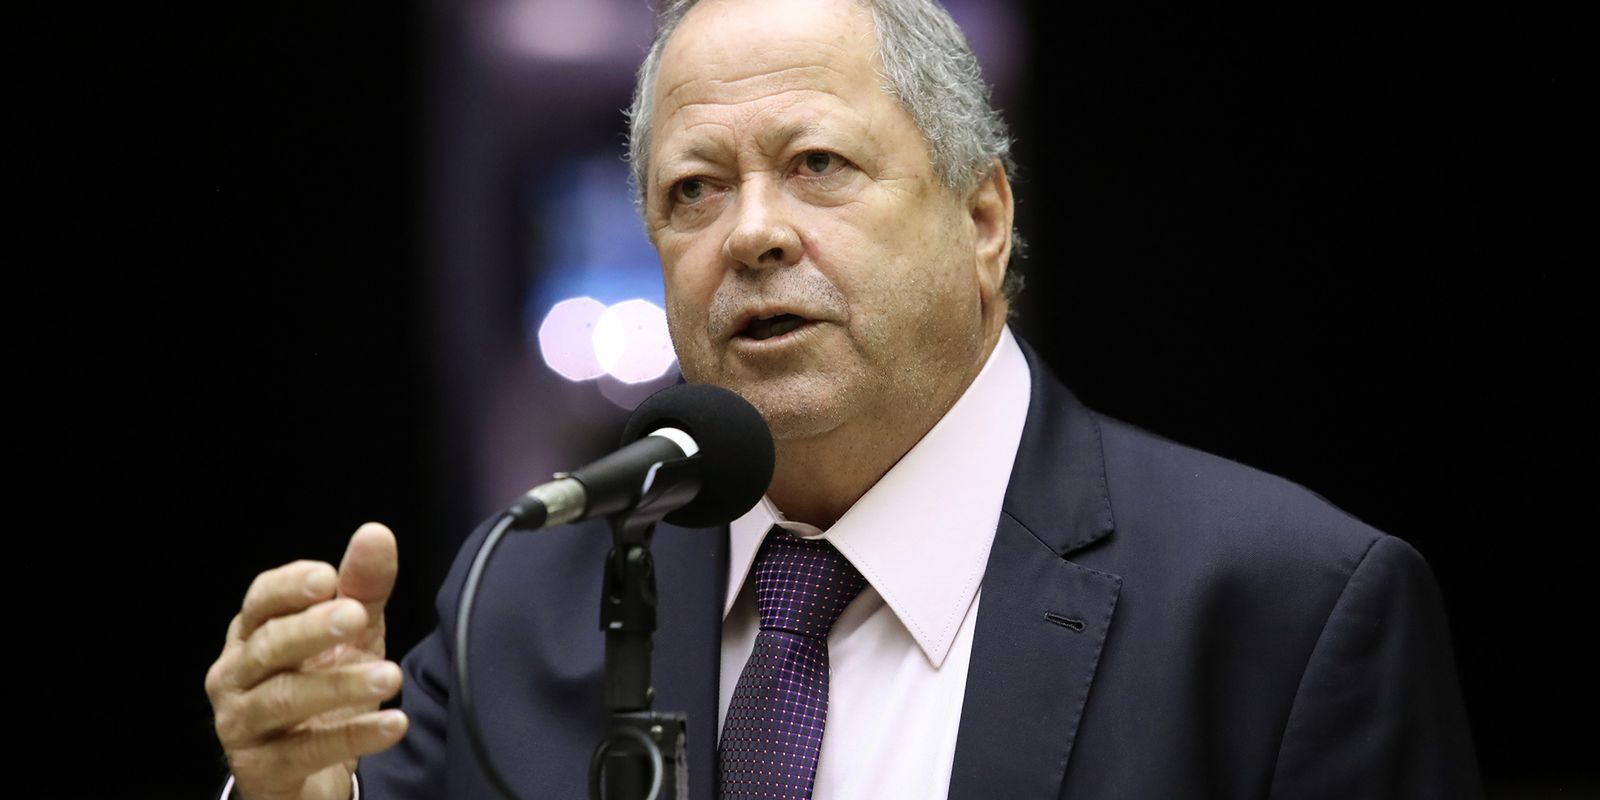 Câmara decide manter prisão de deputado Chiquinho Brazão